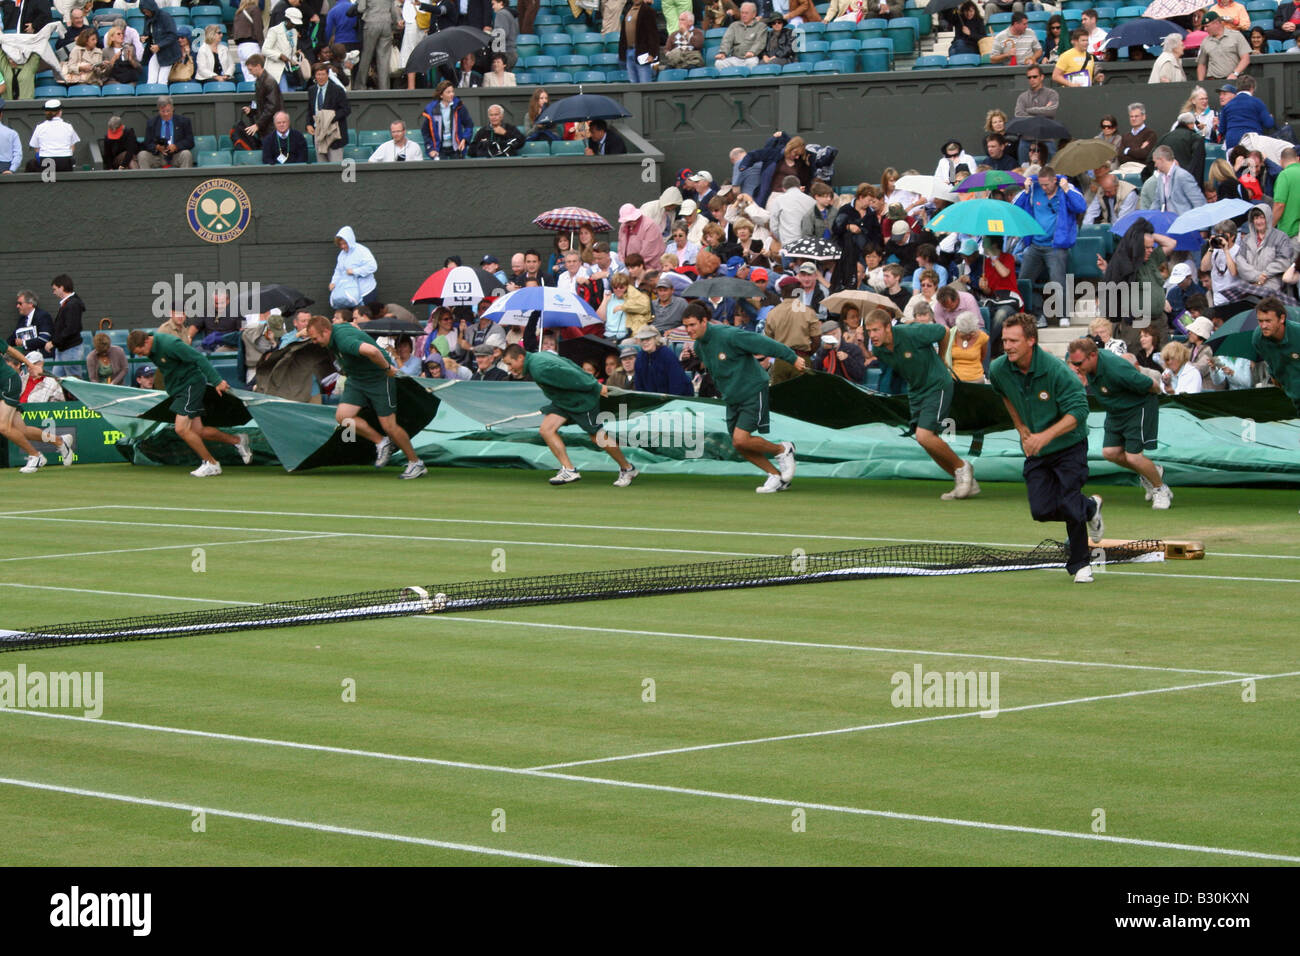 Le personnel au sol se précipiter pour placer le couvercle sur le court central au Championnat de Tennis de Wimbledon en Angleterre Banque D'Images